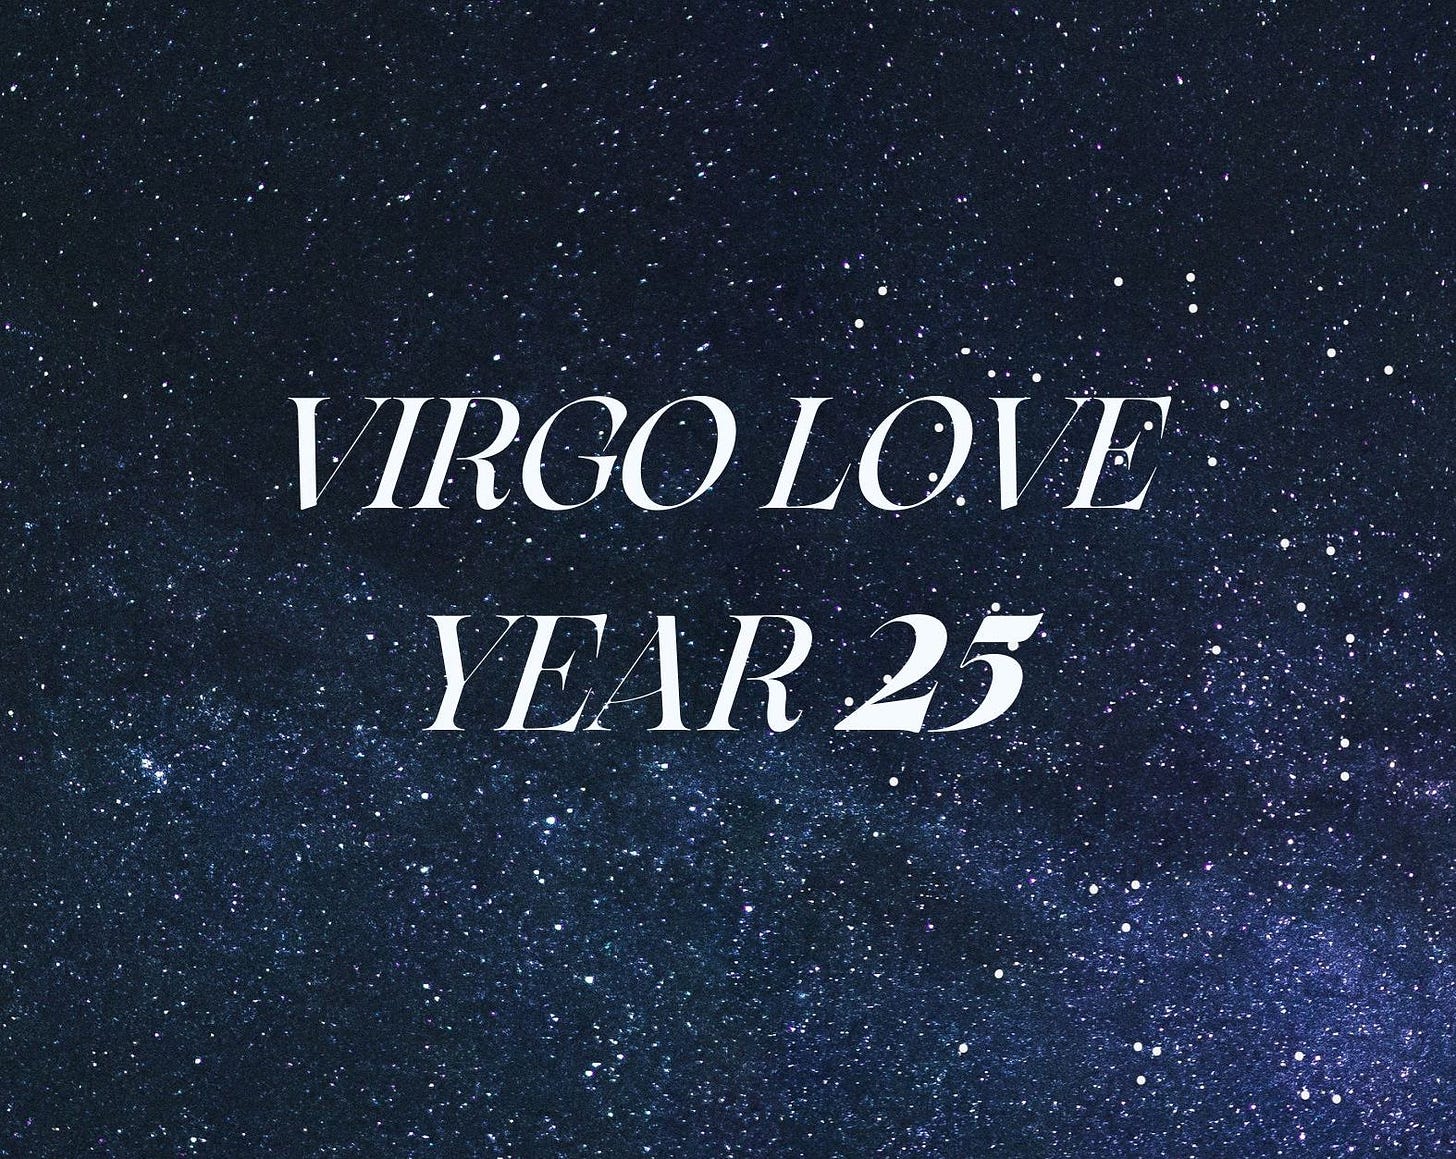 Virgo Love, Year 25 against a galaxy backdrop